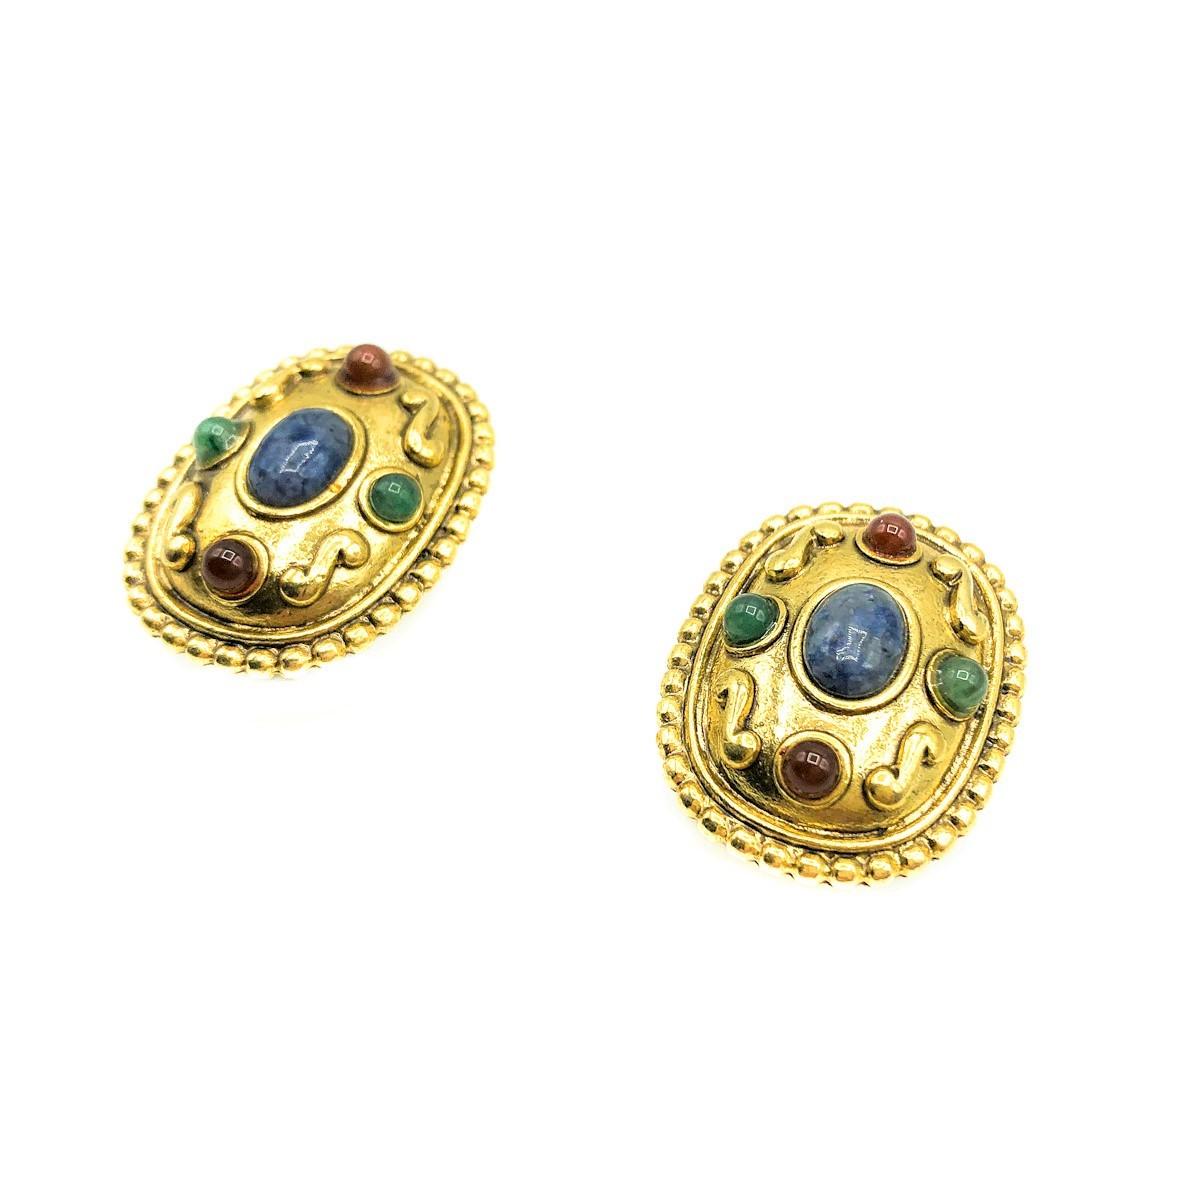 Etruskische Vintage-Ohrringe. Sie ist aus vergoldetem Metall im entruskischen Stil gefertigt und mit roten, blauen und grünen Glascabochon-Steinen besetzt. In sehr gutem Zustand, 2,5 cm. Clevere klassische Clips. Sollten Sie sich für einen Kauf bei